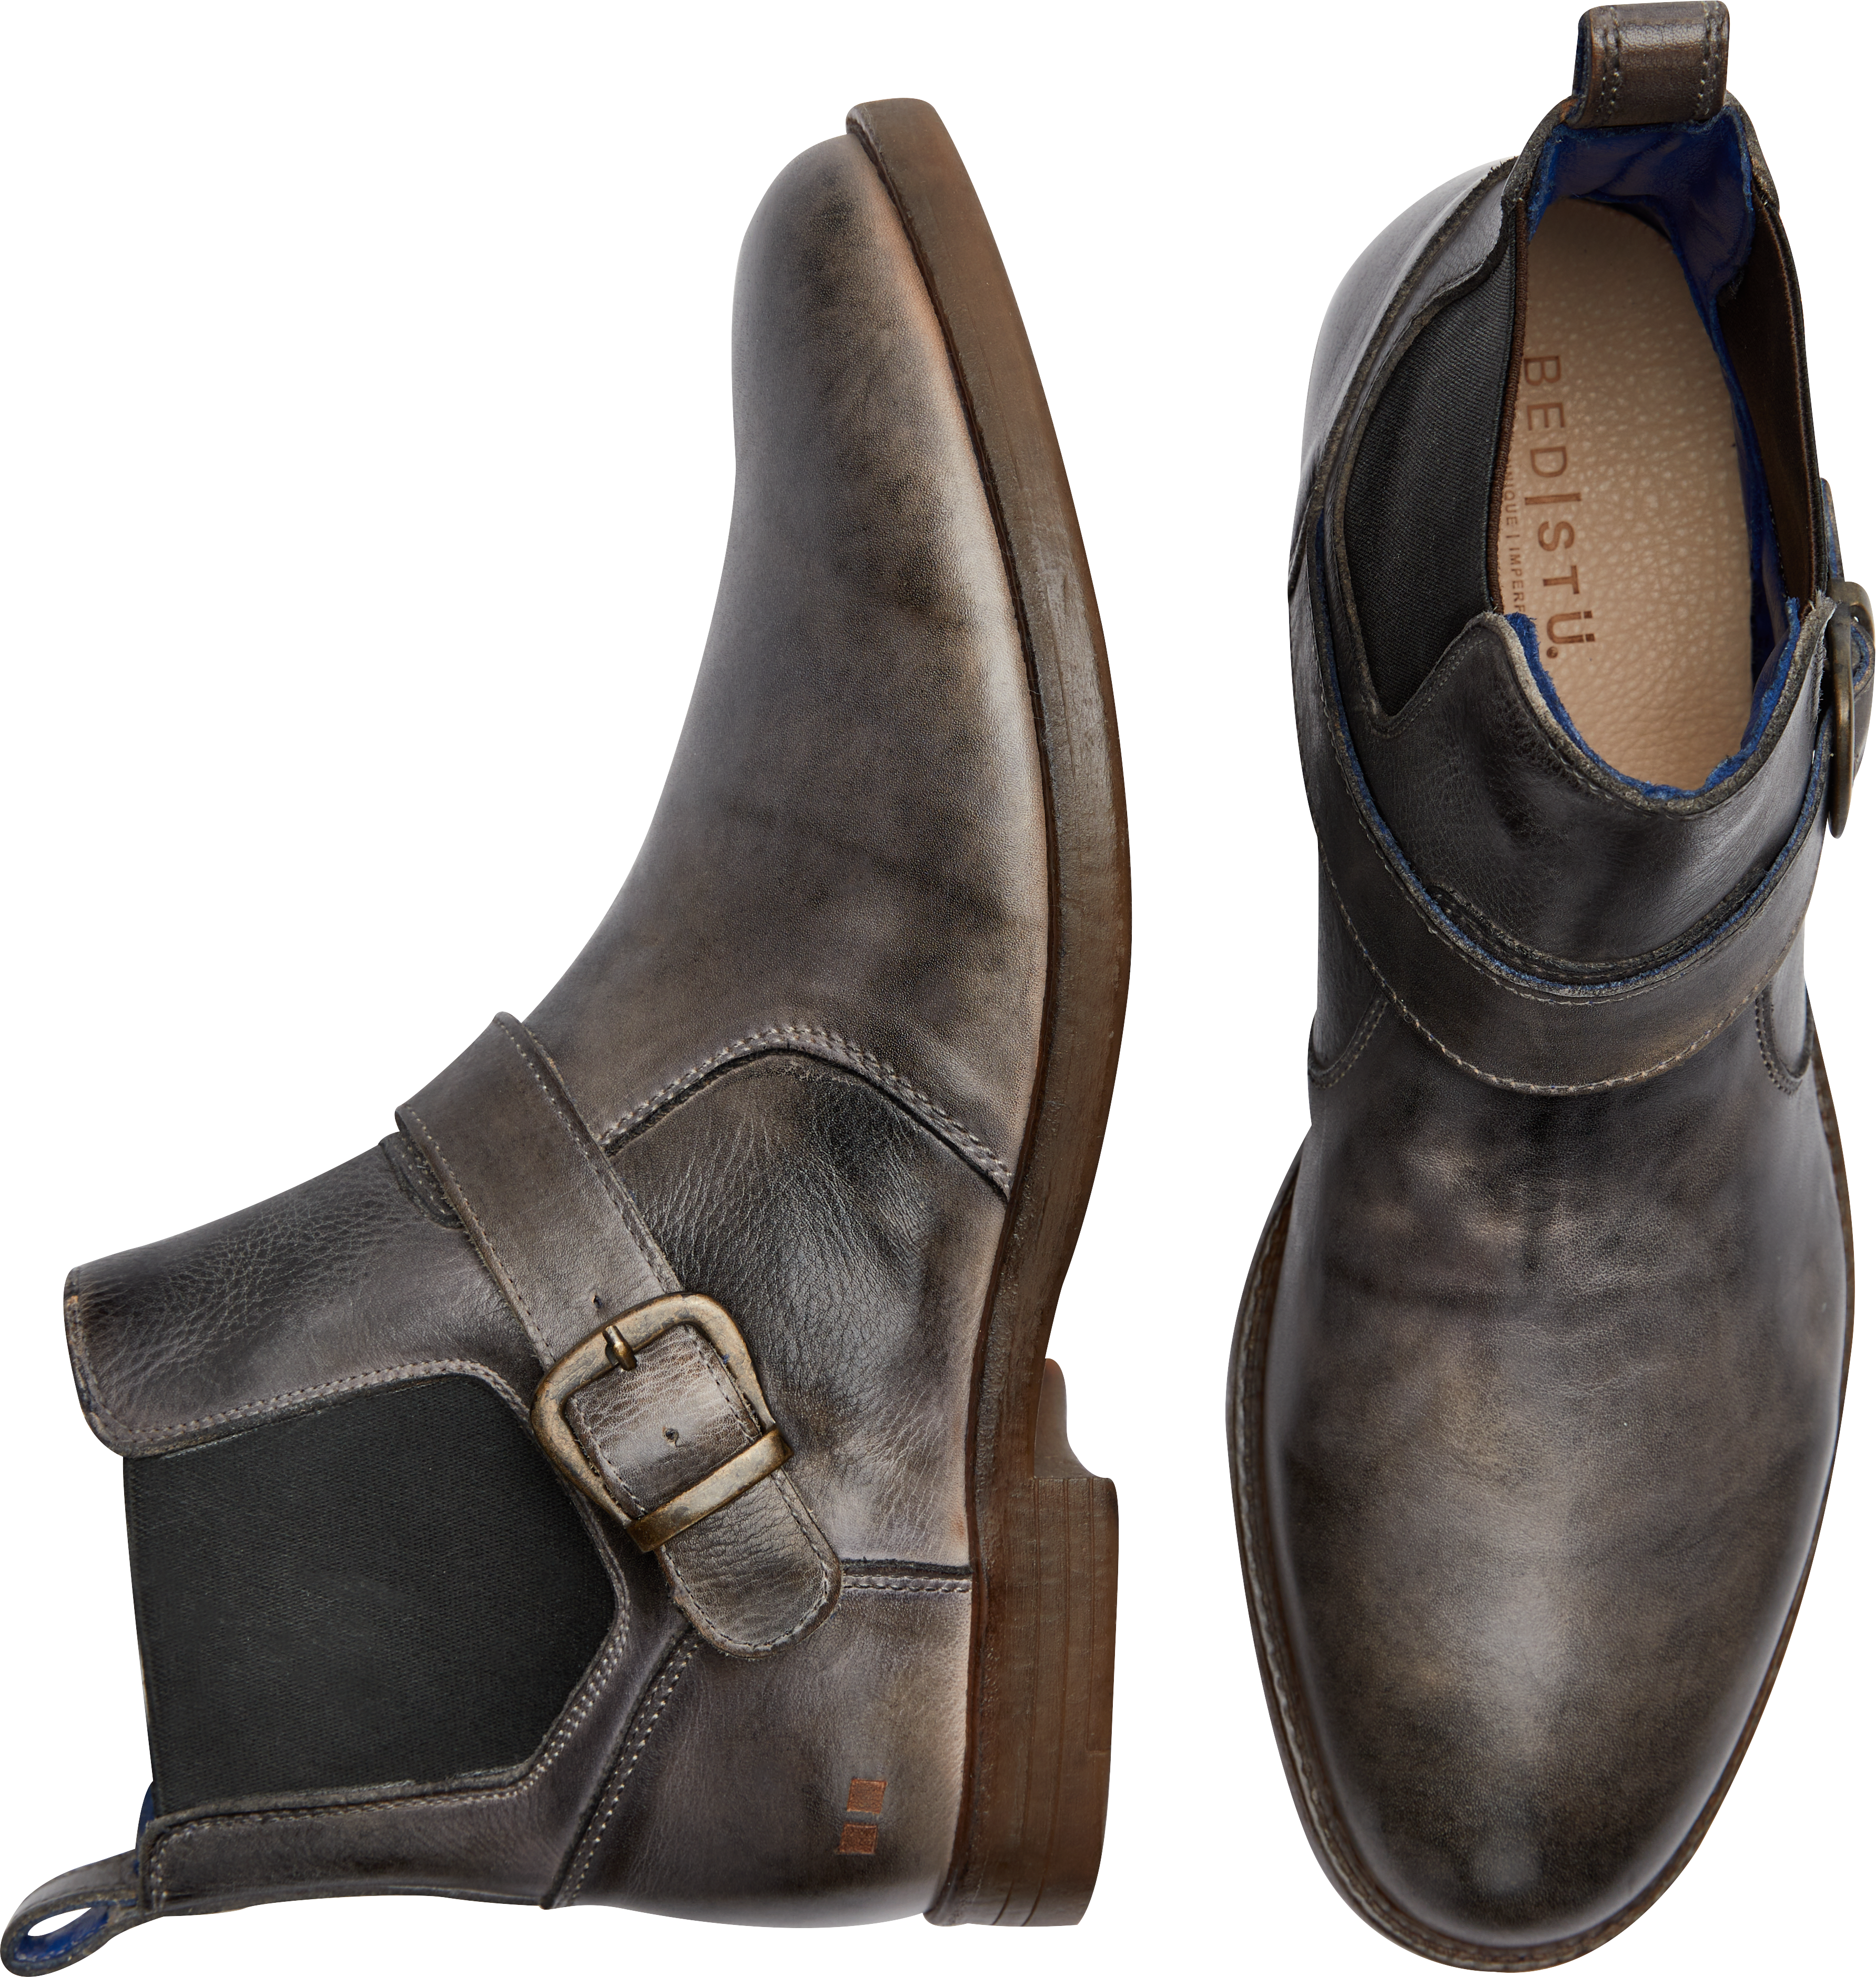 Bed Stu Michelangelo Plain Toe Chelsea Boots, Gray - Men's Shoes | Men ...